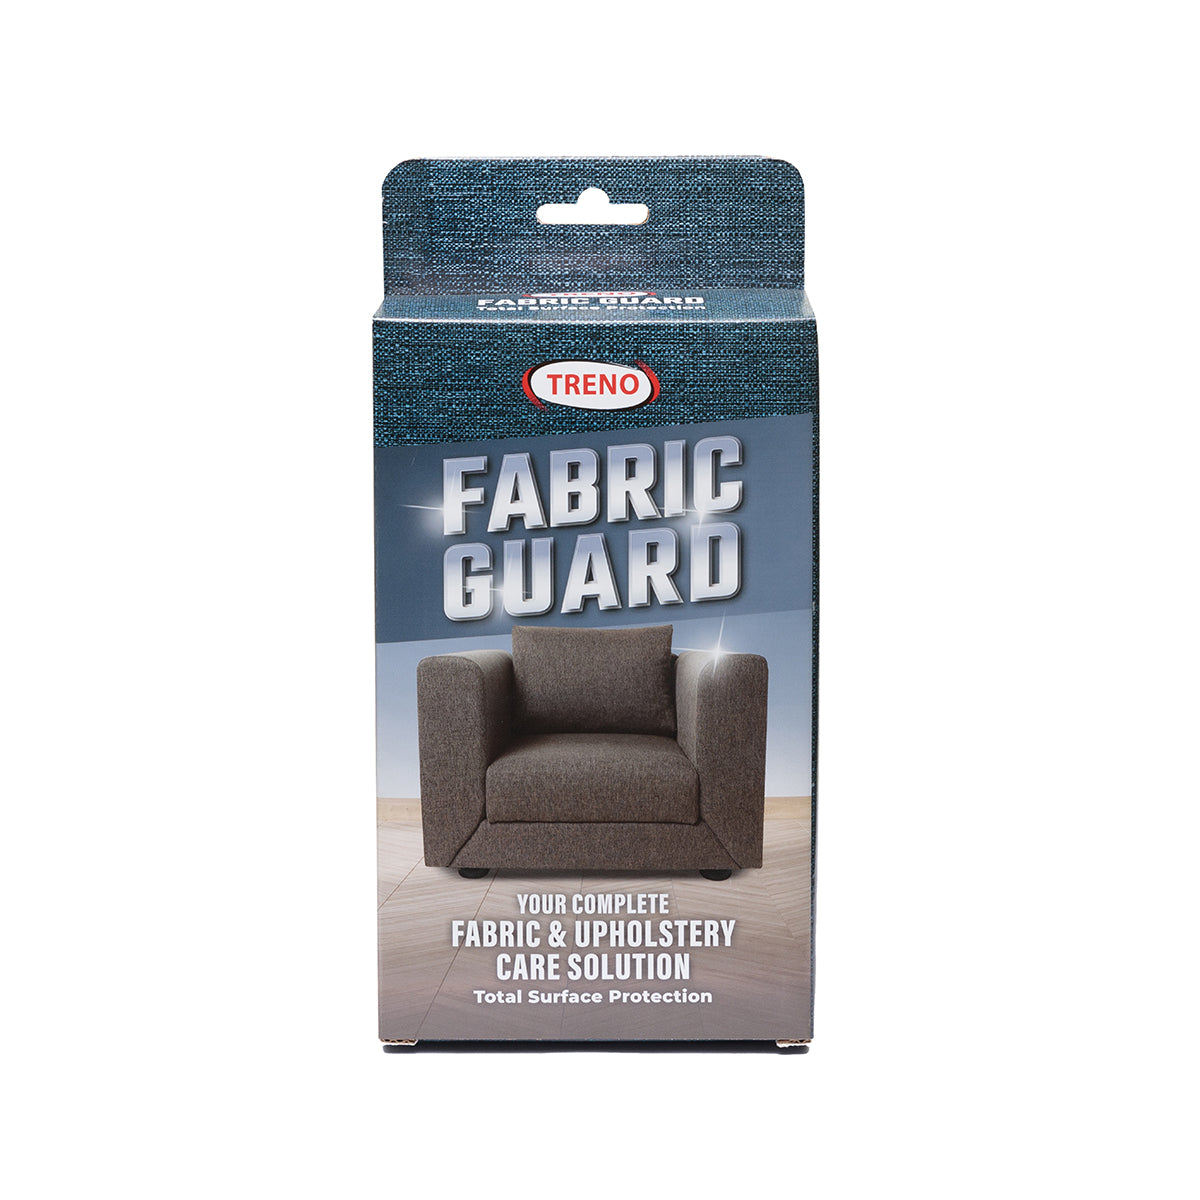 Treno Fabric Guard